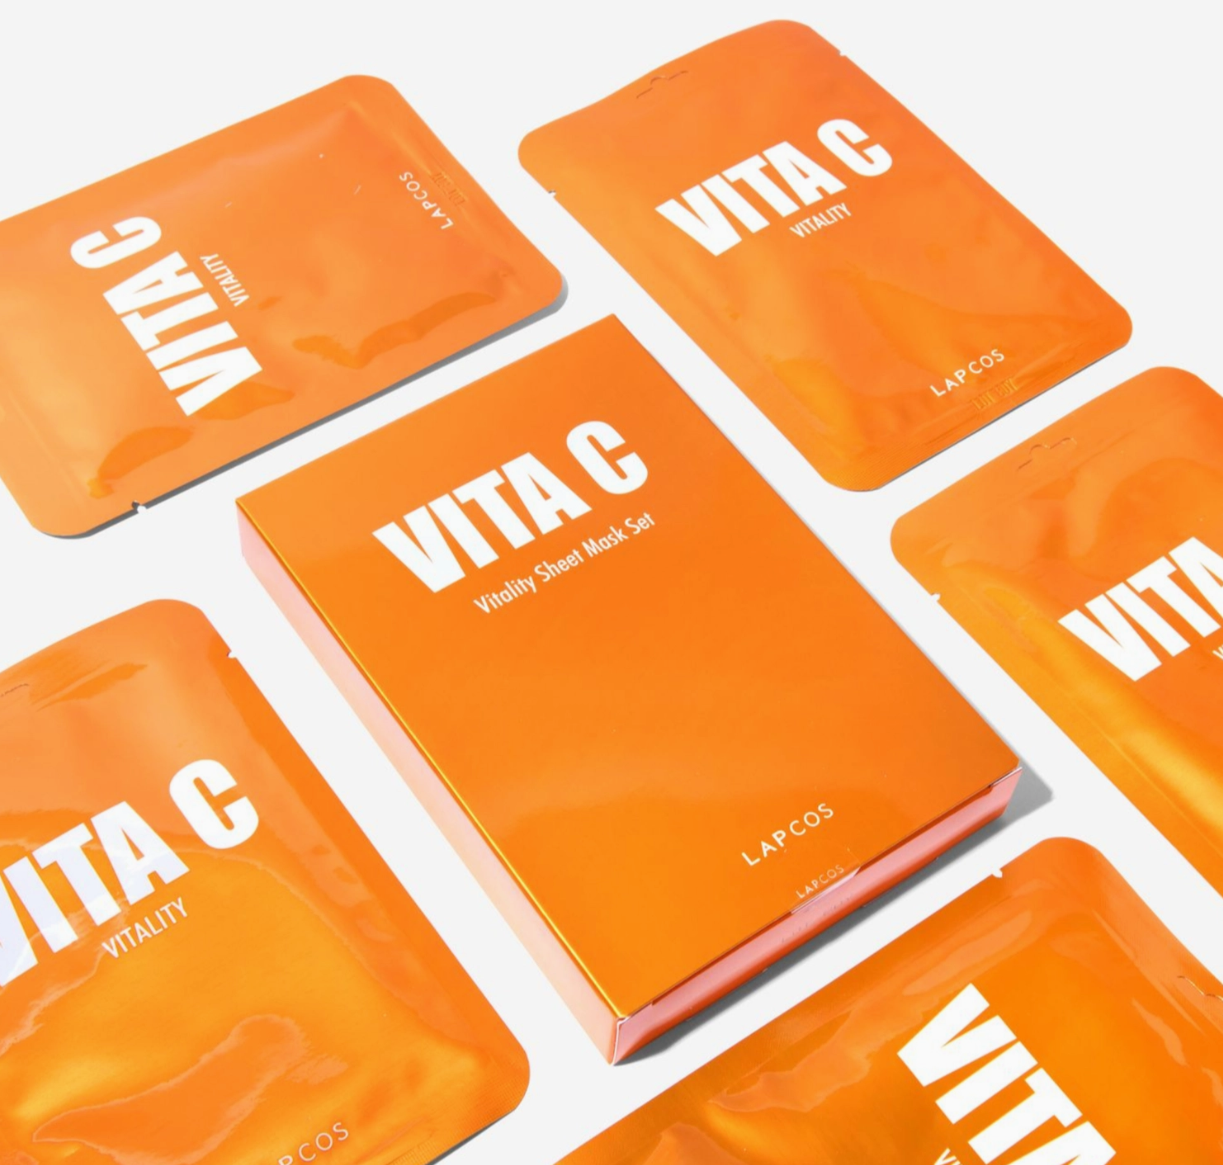 Vita C Derma Sheet Mask 5-pack